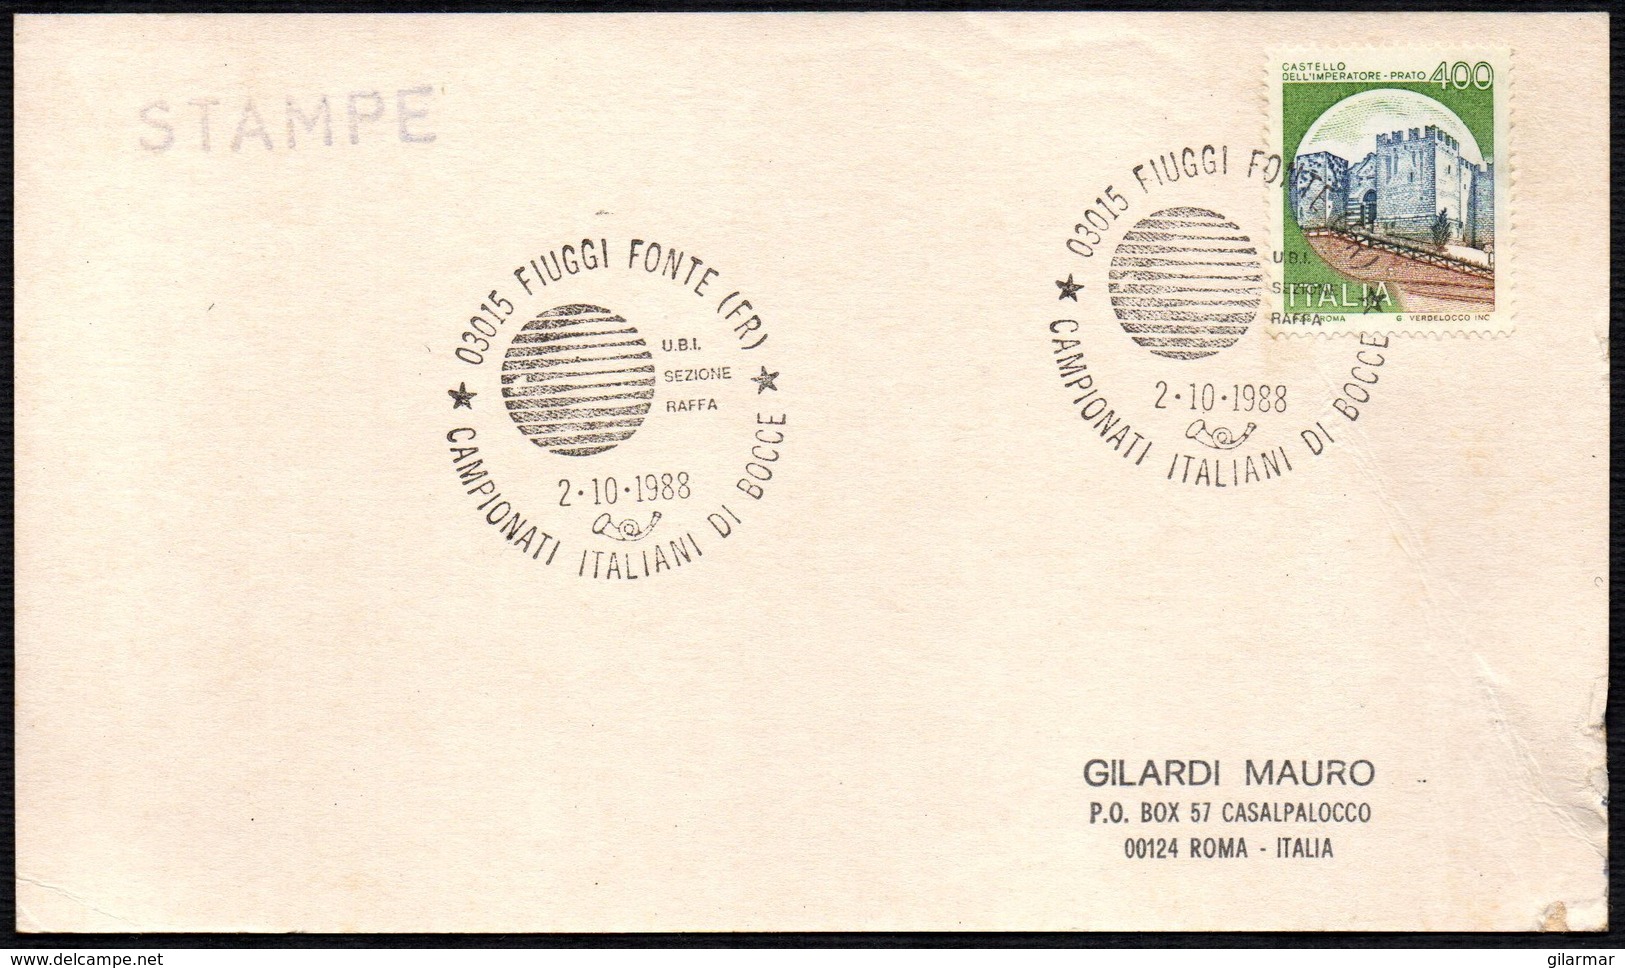 BOWLS - ITALIA FIUGGI FONTE (FR) 1988 - CAMPIONATI ITALIANI DI BOCCE - U.B.I. SEZIONE RAFFA - CARD VIAGGIATA - Pétanque